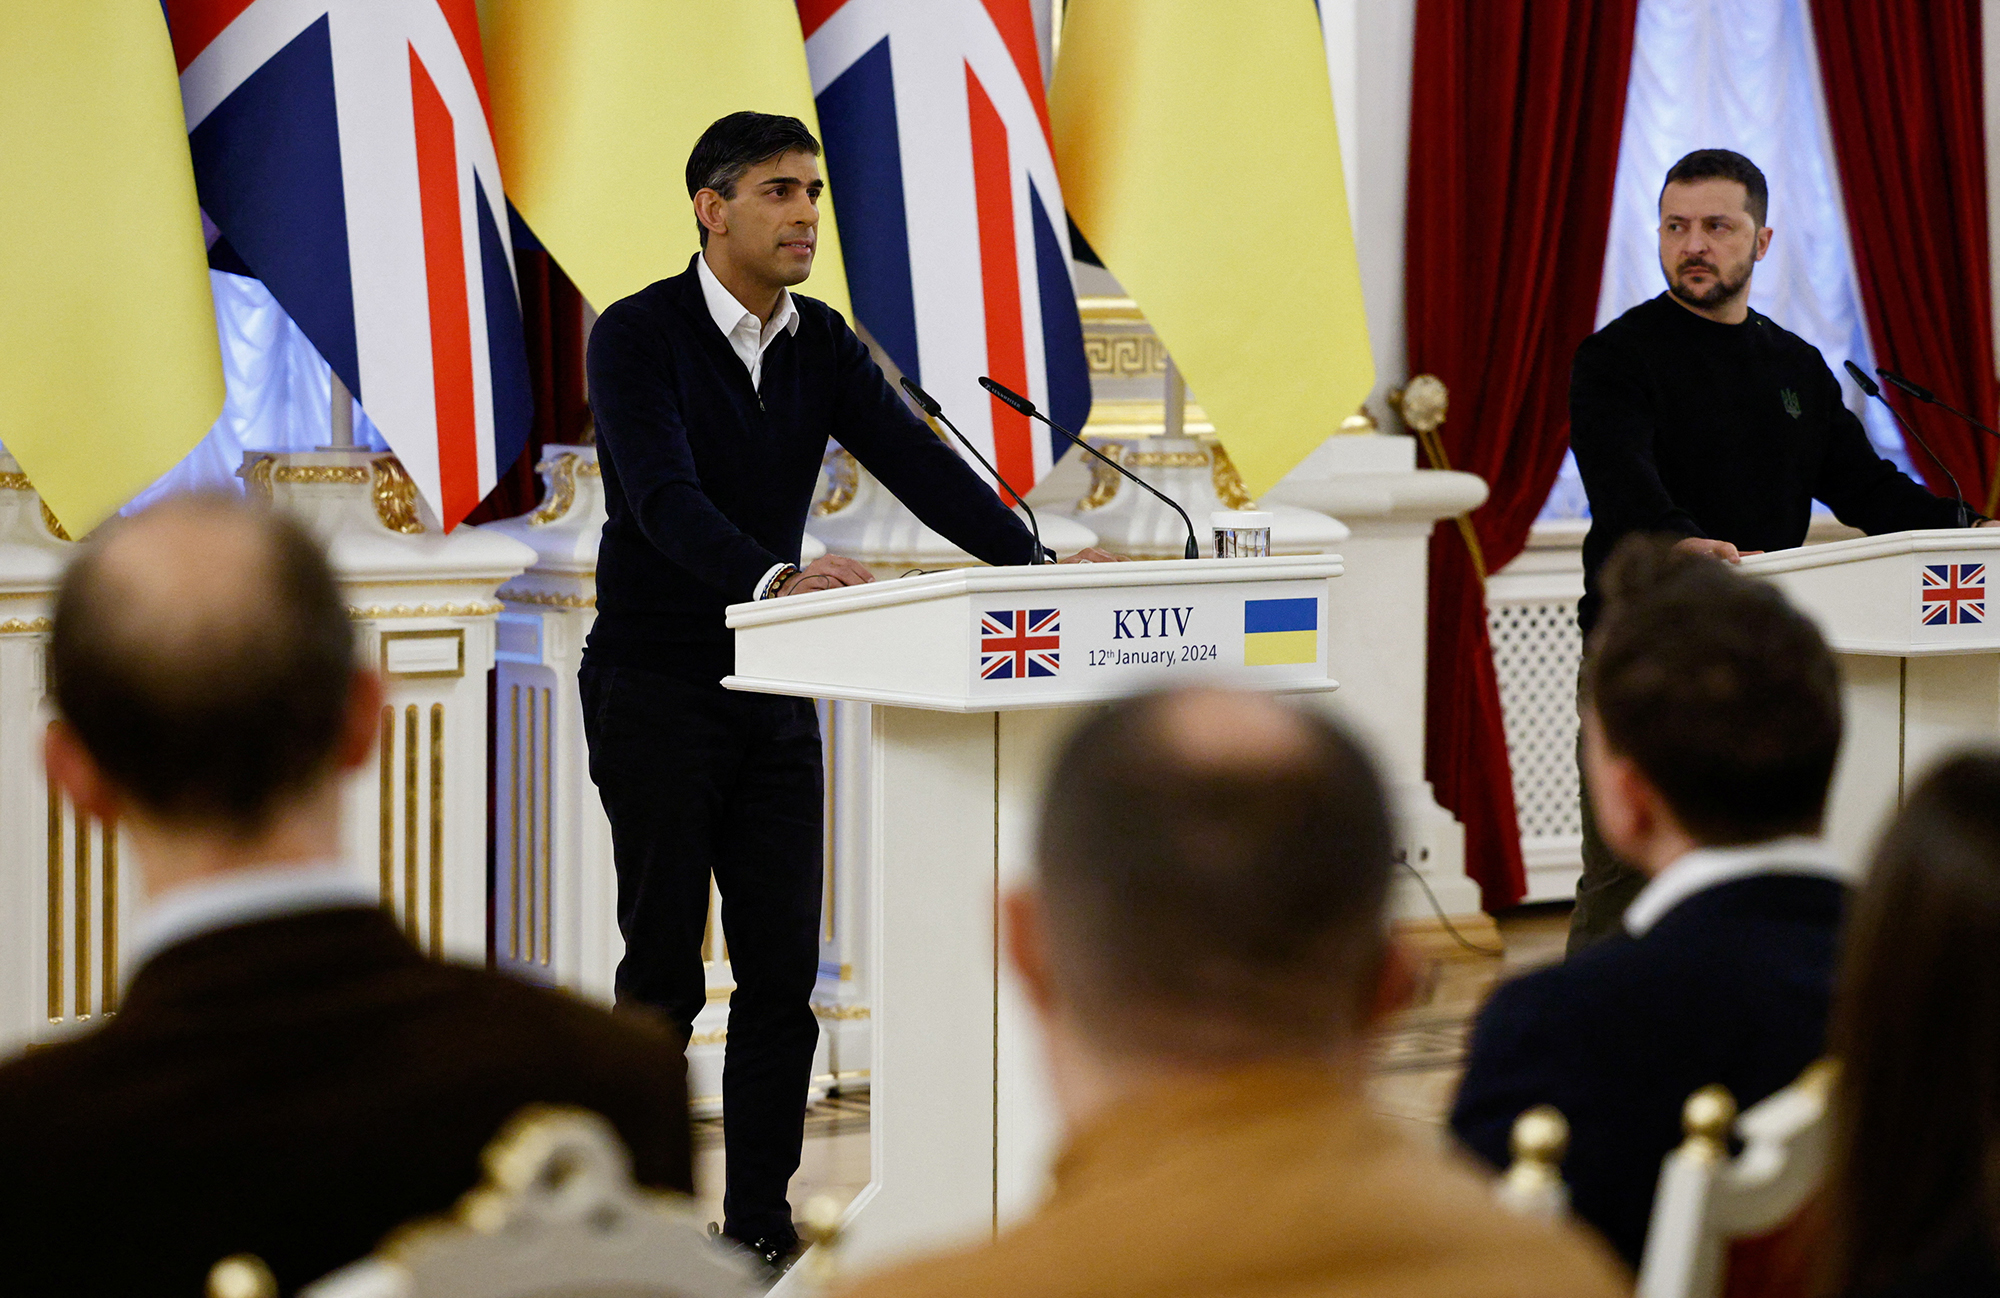 Ukrainian President Volodymyr Zelensky, right, looks on as British Prime Minister Rishi Sunak speaks in Kyiv, Ukraine, on January 12.